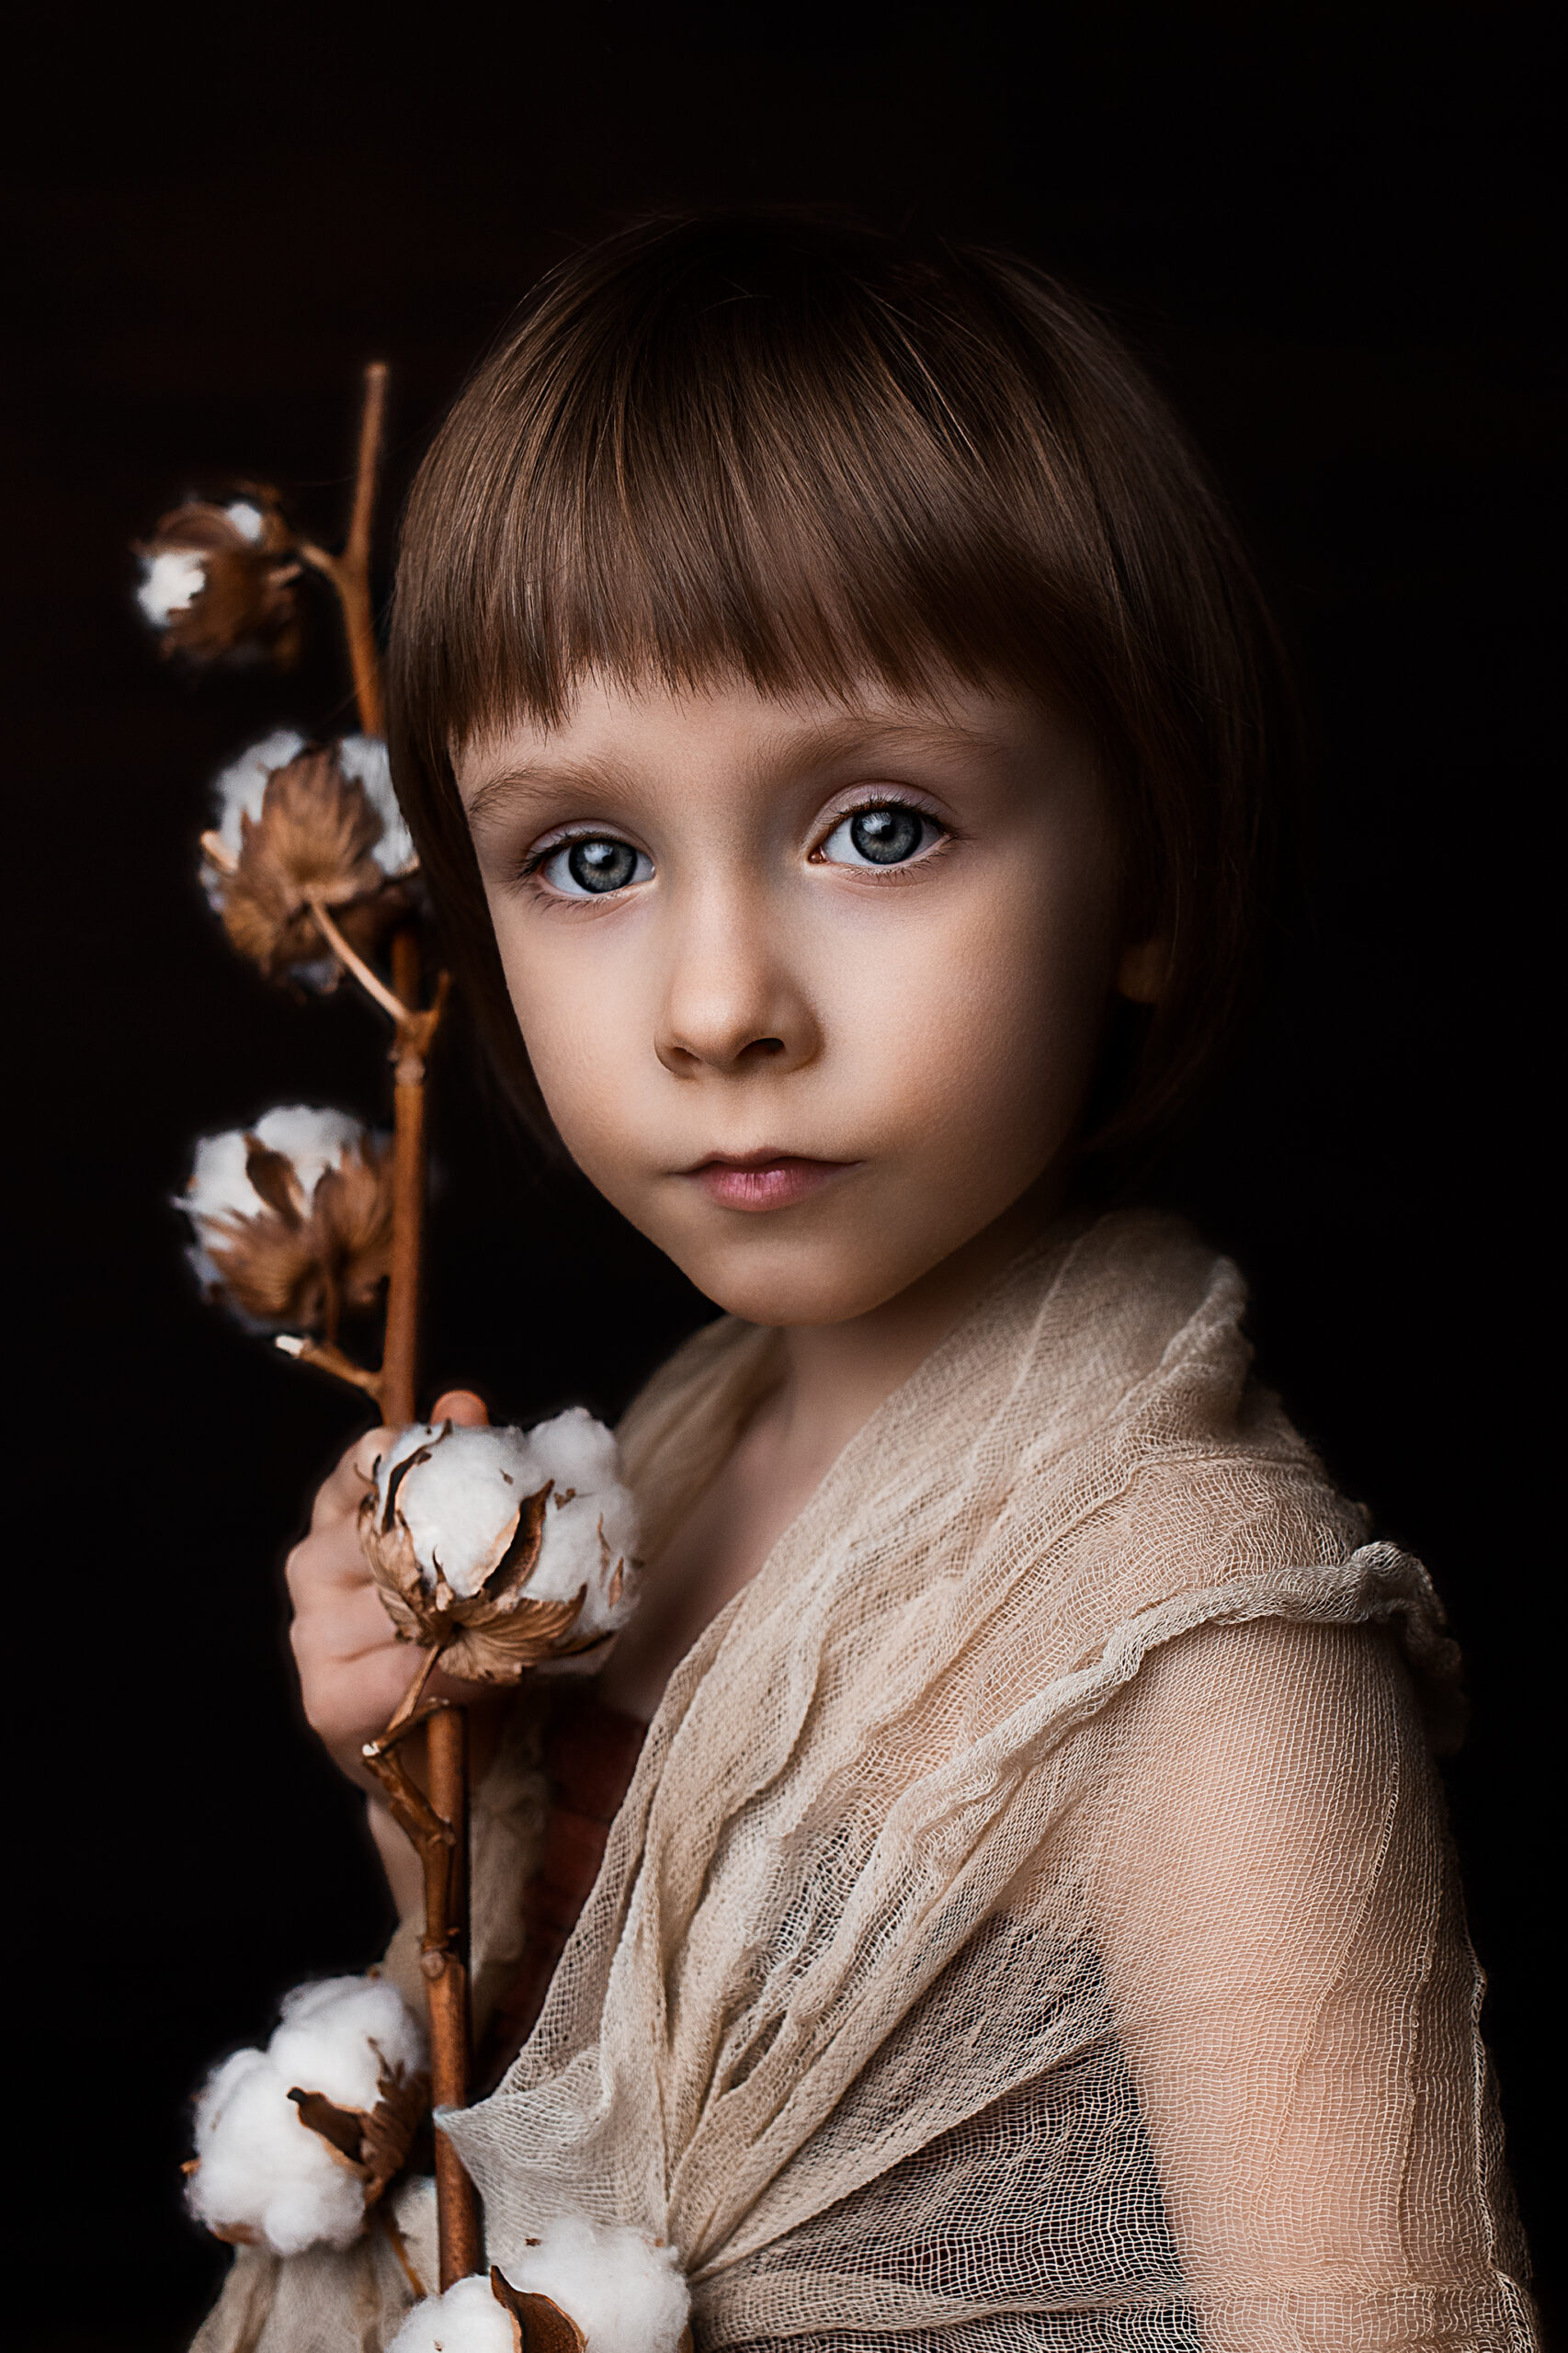 Kurs postprodukcji zdjęcia portretowego “Dziewczynka z gałązką bawełny”